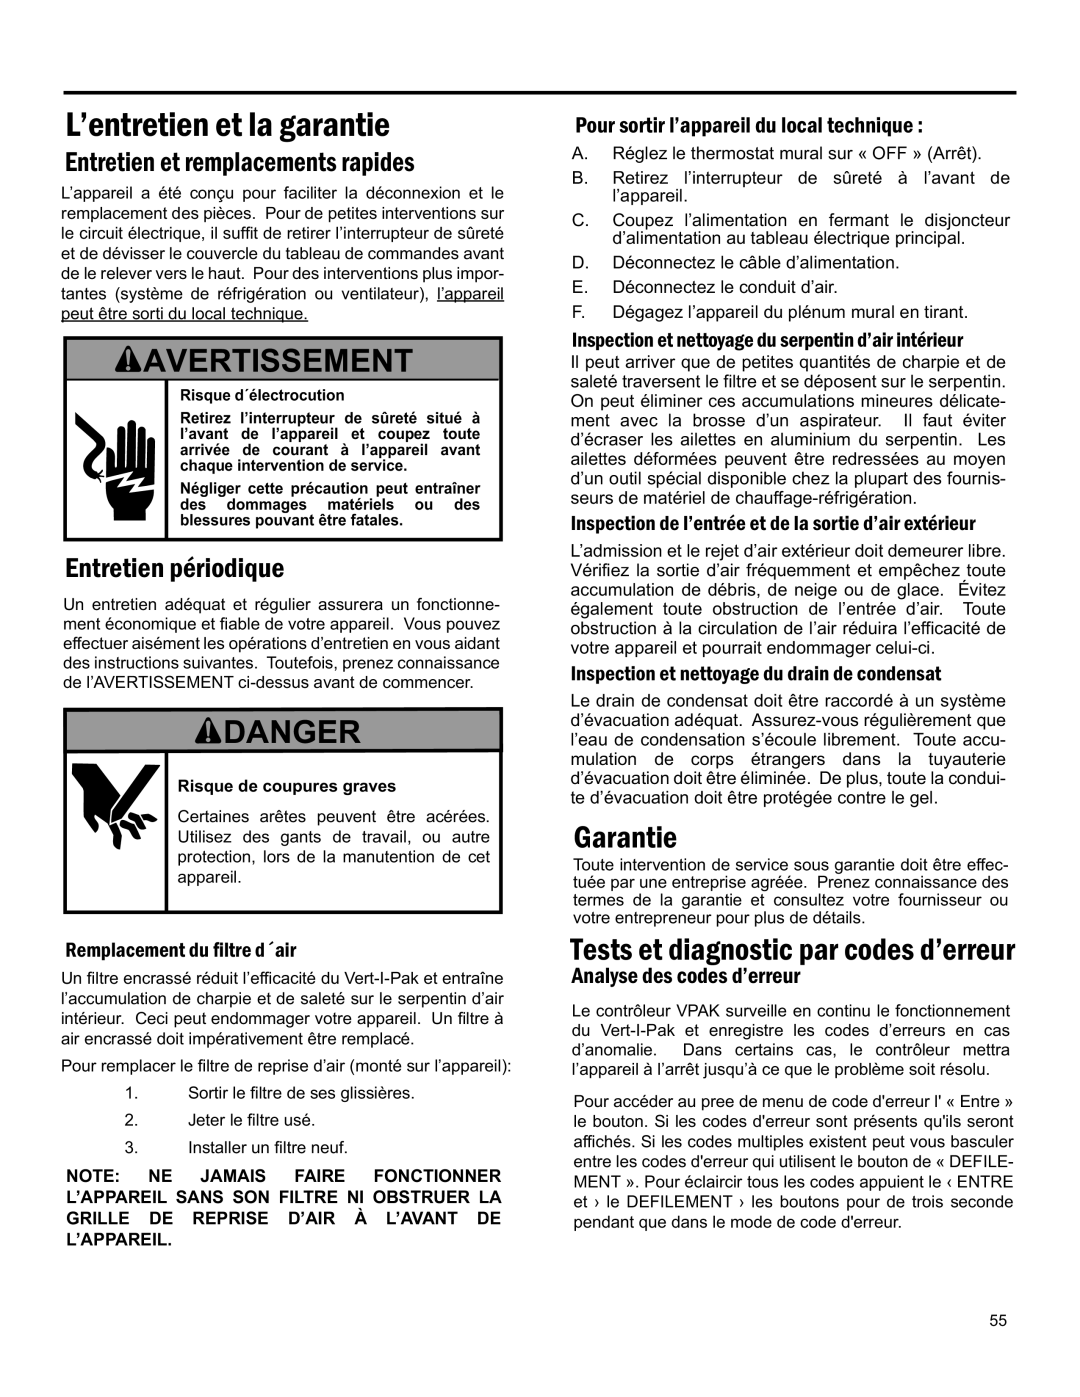 Friedrich 920-075-13 (1-11) Danger, L’Entretien Et La Garantie, Tests Et Diagnostic Par Codes D’Erreur, Avertissement 